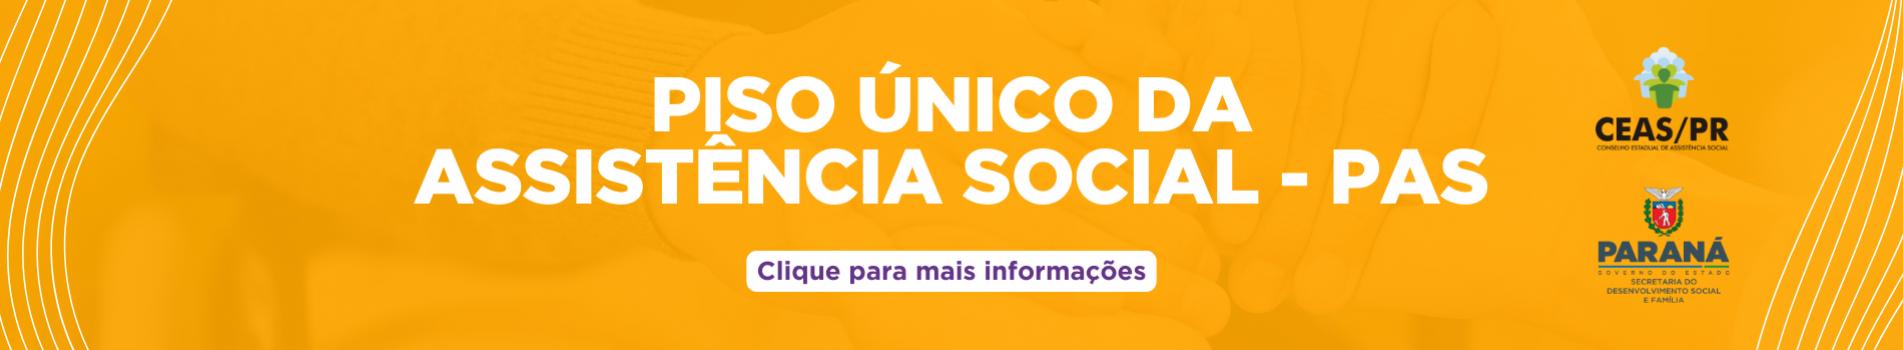 piso_unico_da_assistencia_social